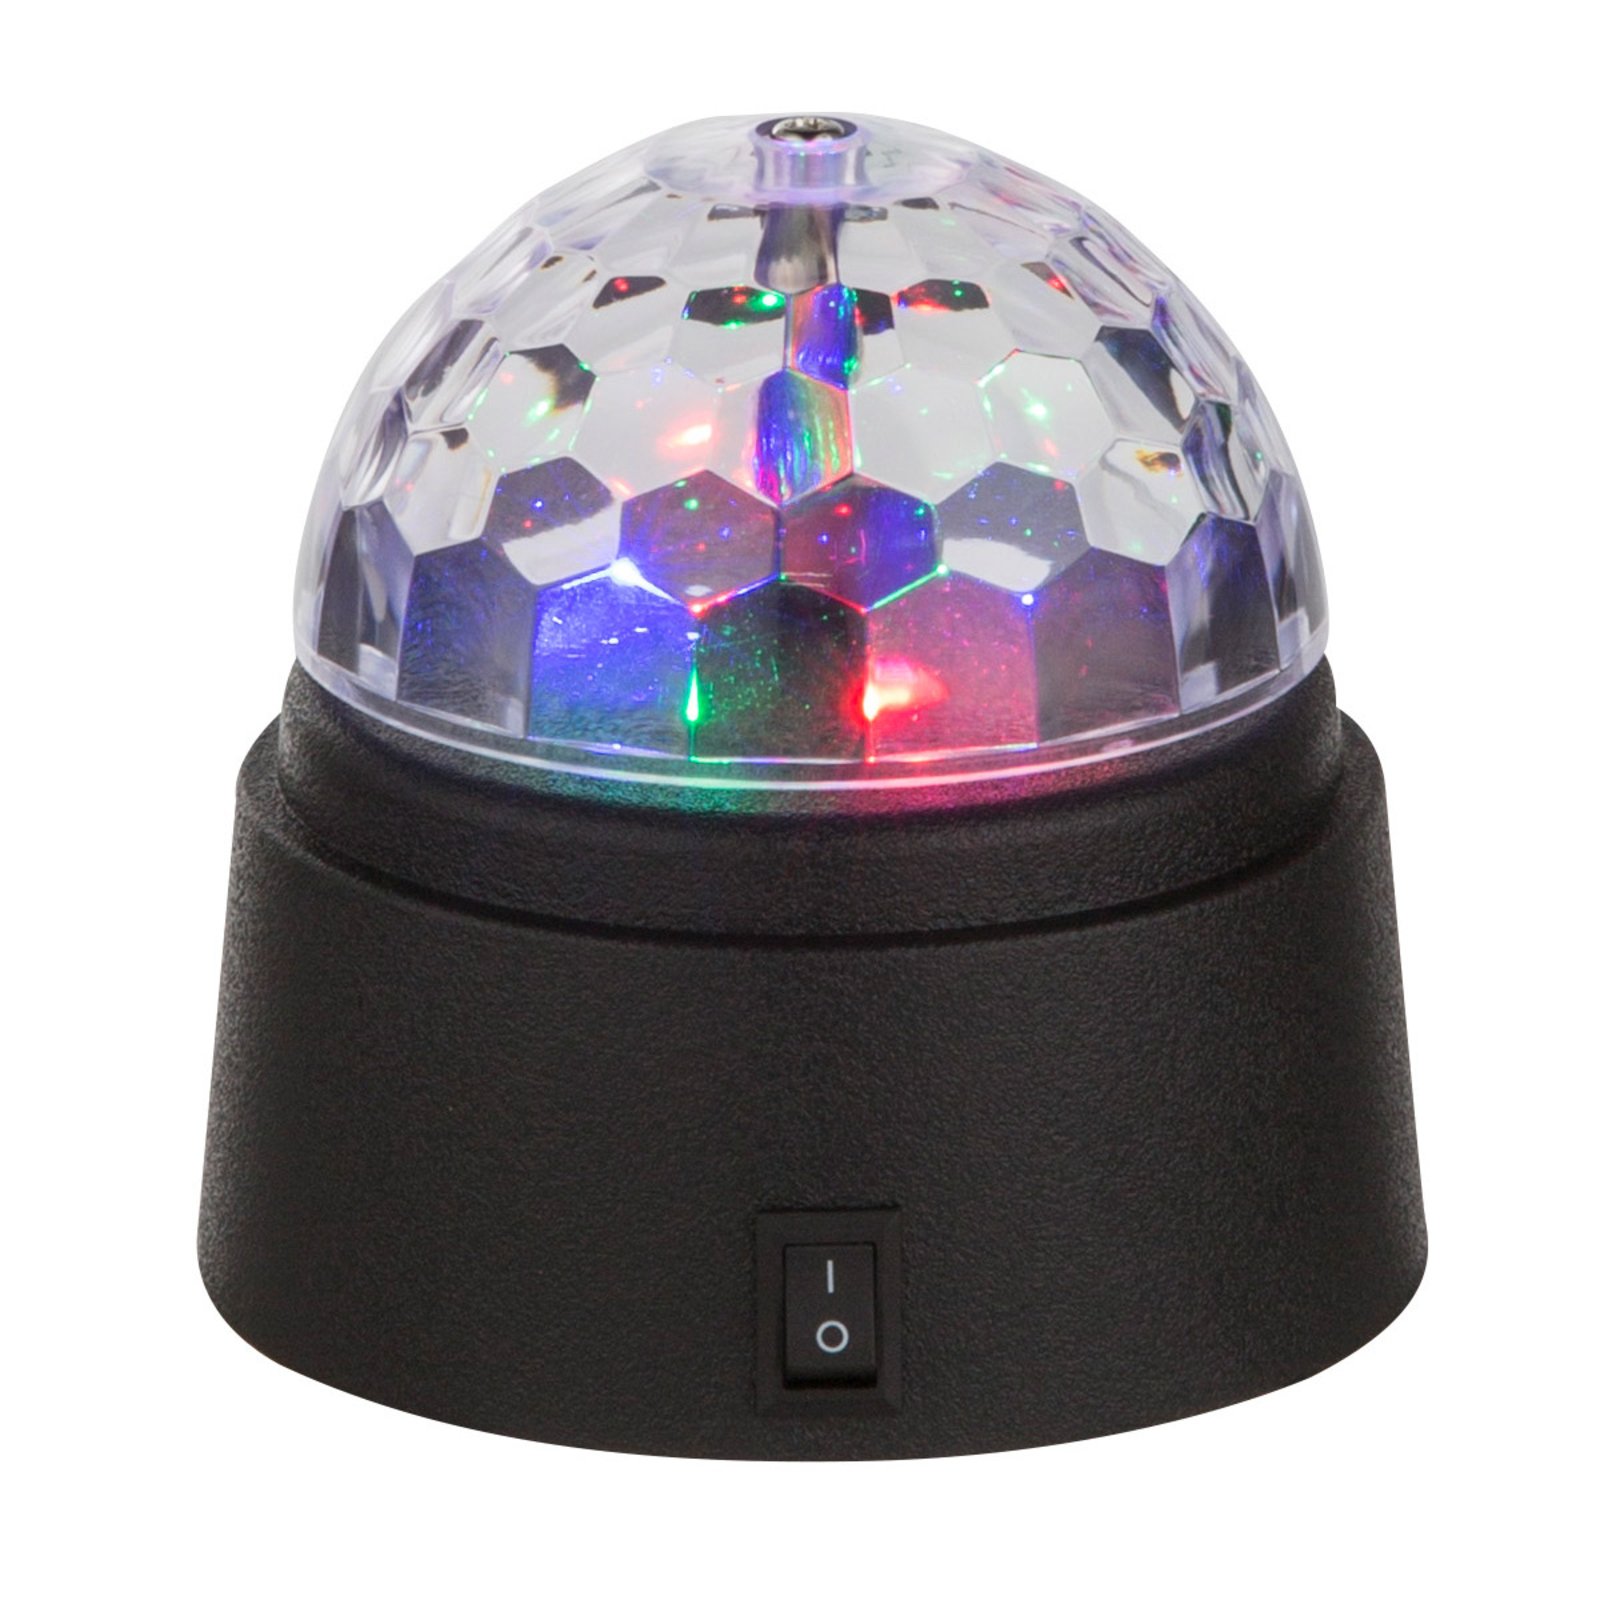 LED stolní dekorační lampa Disco, barevné světlo